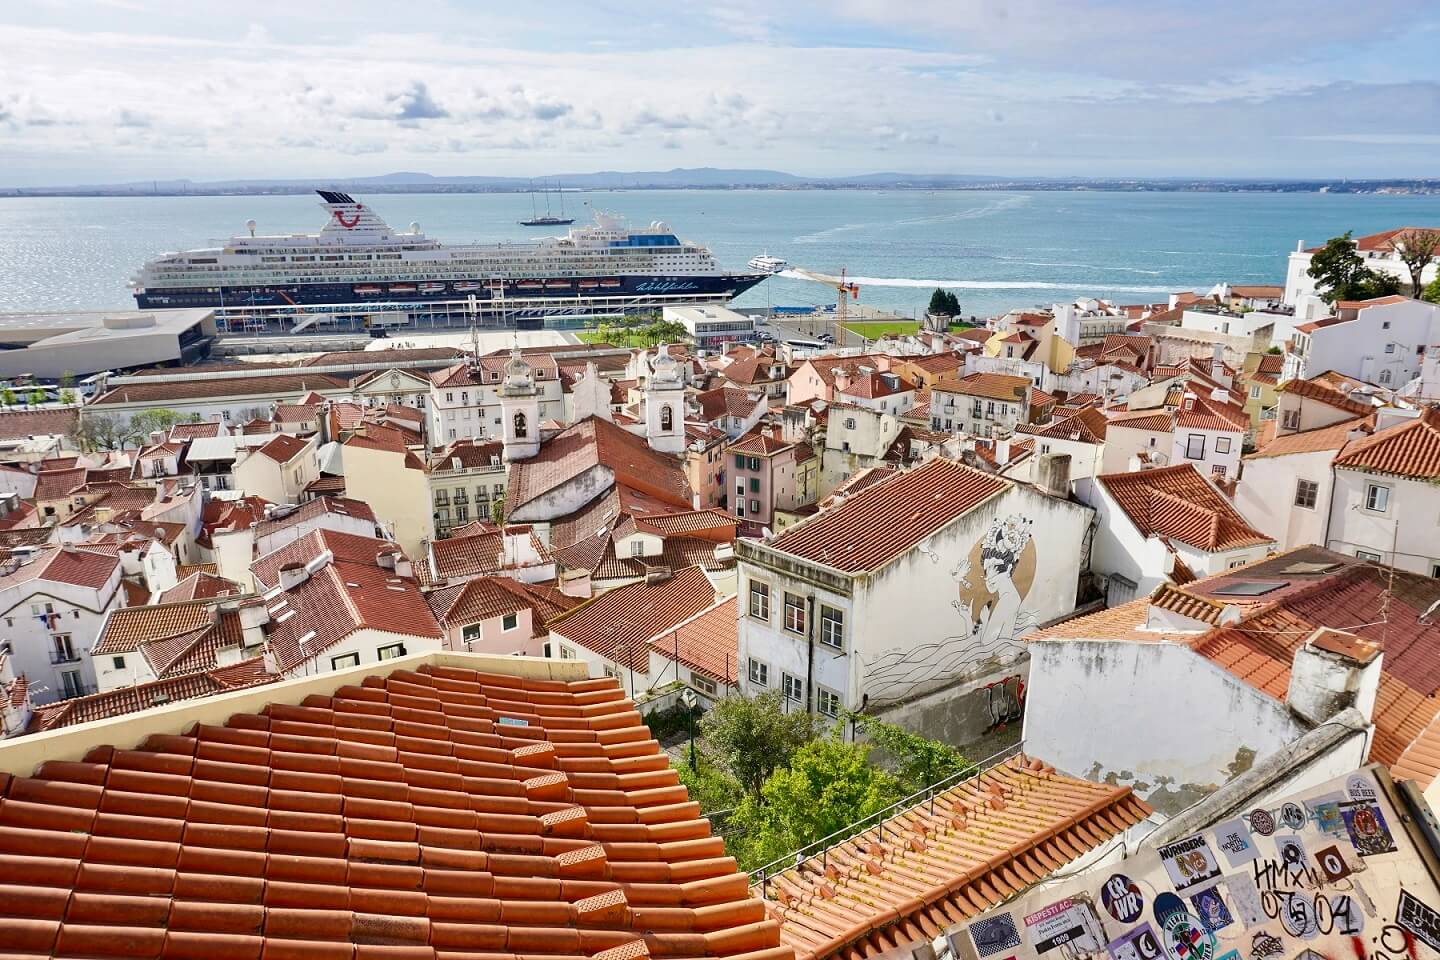 Unterwegs in Lissabon – Die schönsten Orte mit der Mein Schiff Flotte erleben